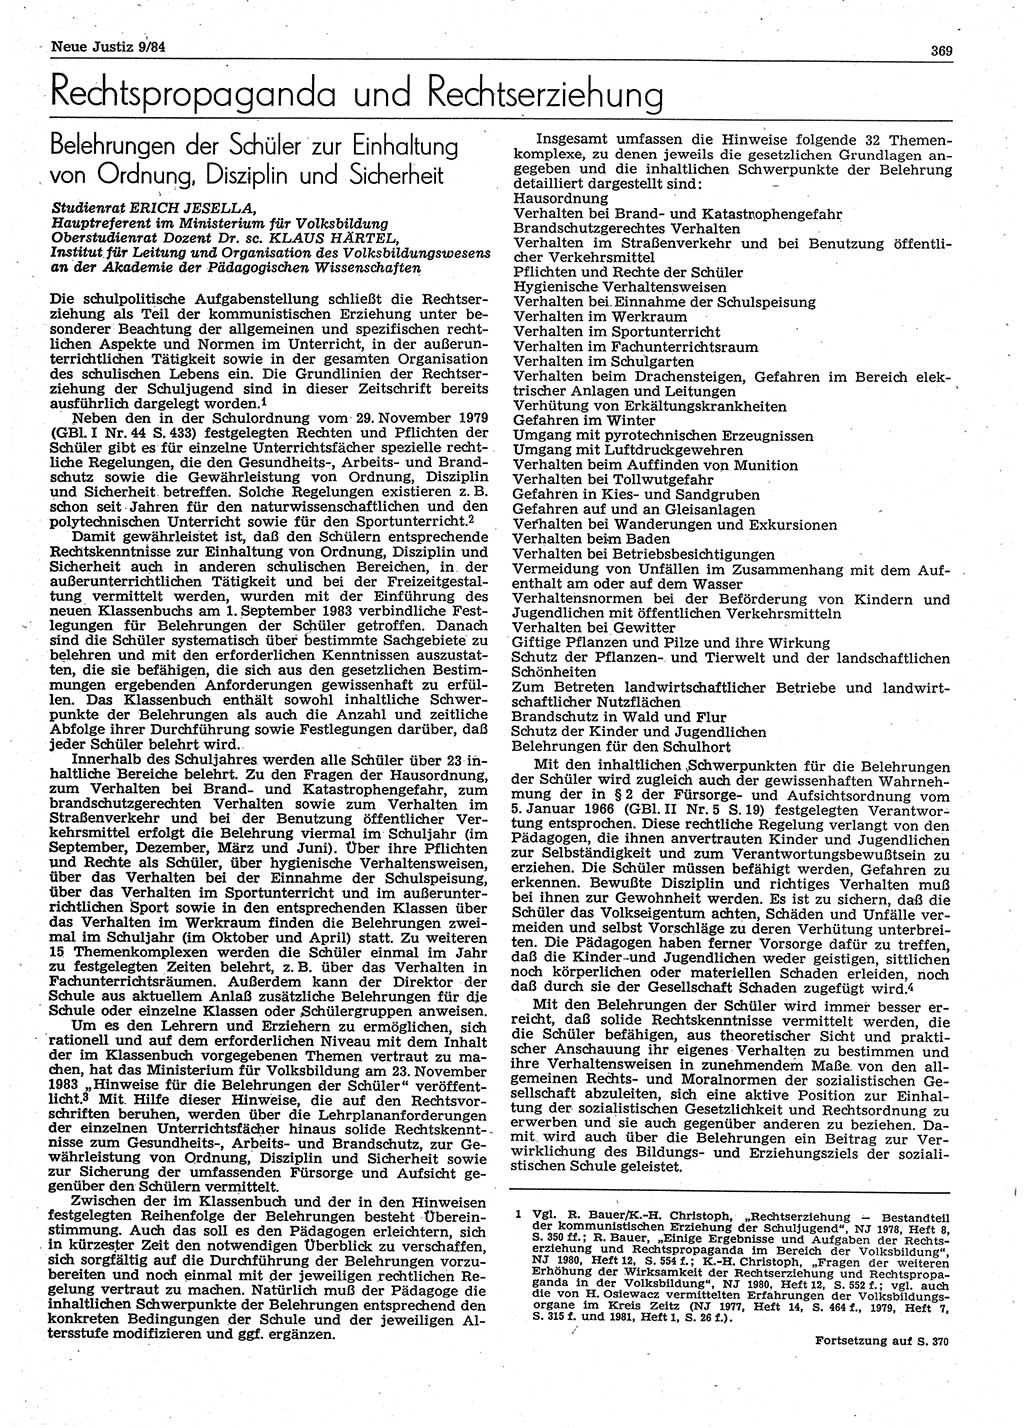 Neue Justiz (NJ), Zeitschrift für sozialistisches Recht und Gesetzlichkeit [Deutsche Demokratische Republik (DDR)], 38. Jahrgang 1984, Seite 369 (NJ DDR 1984, S. 369)